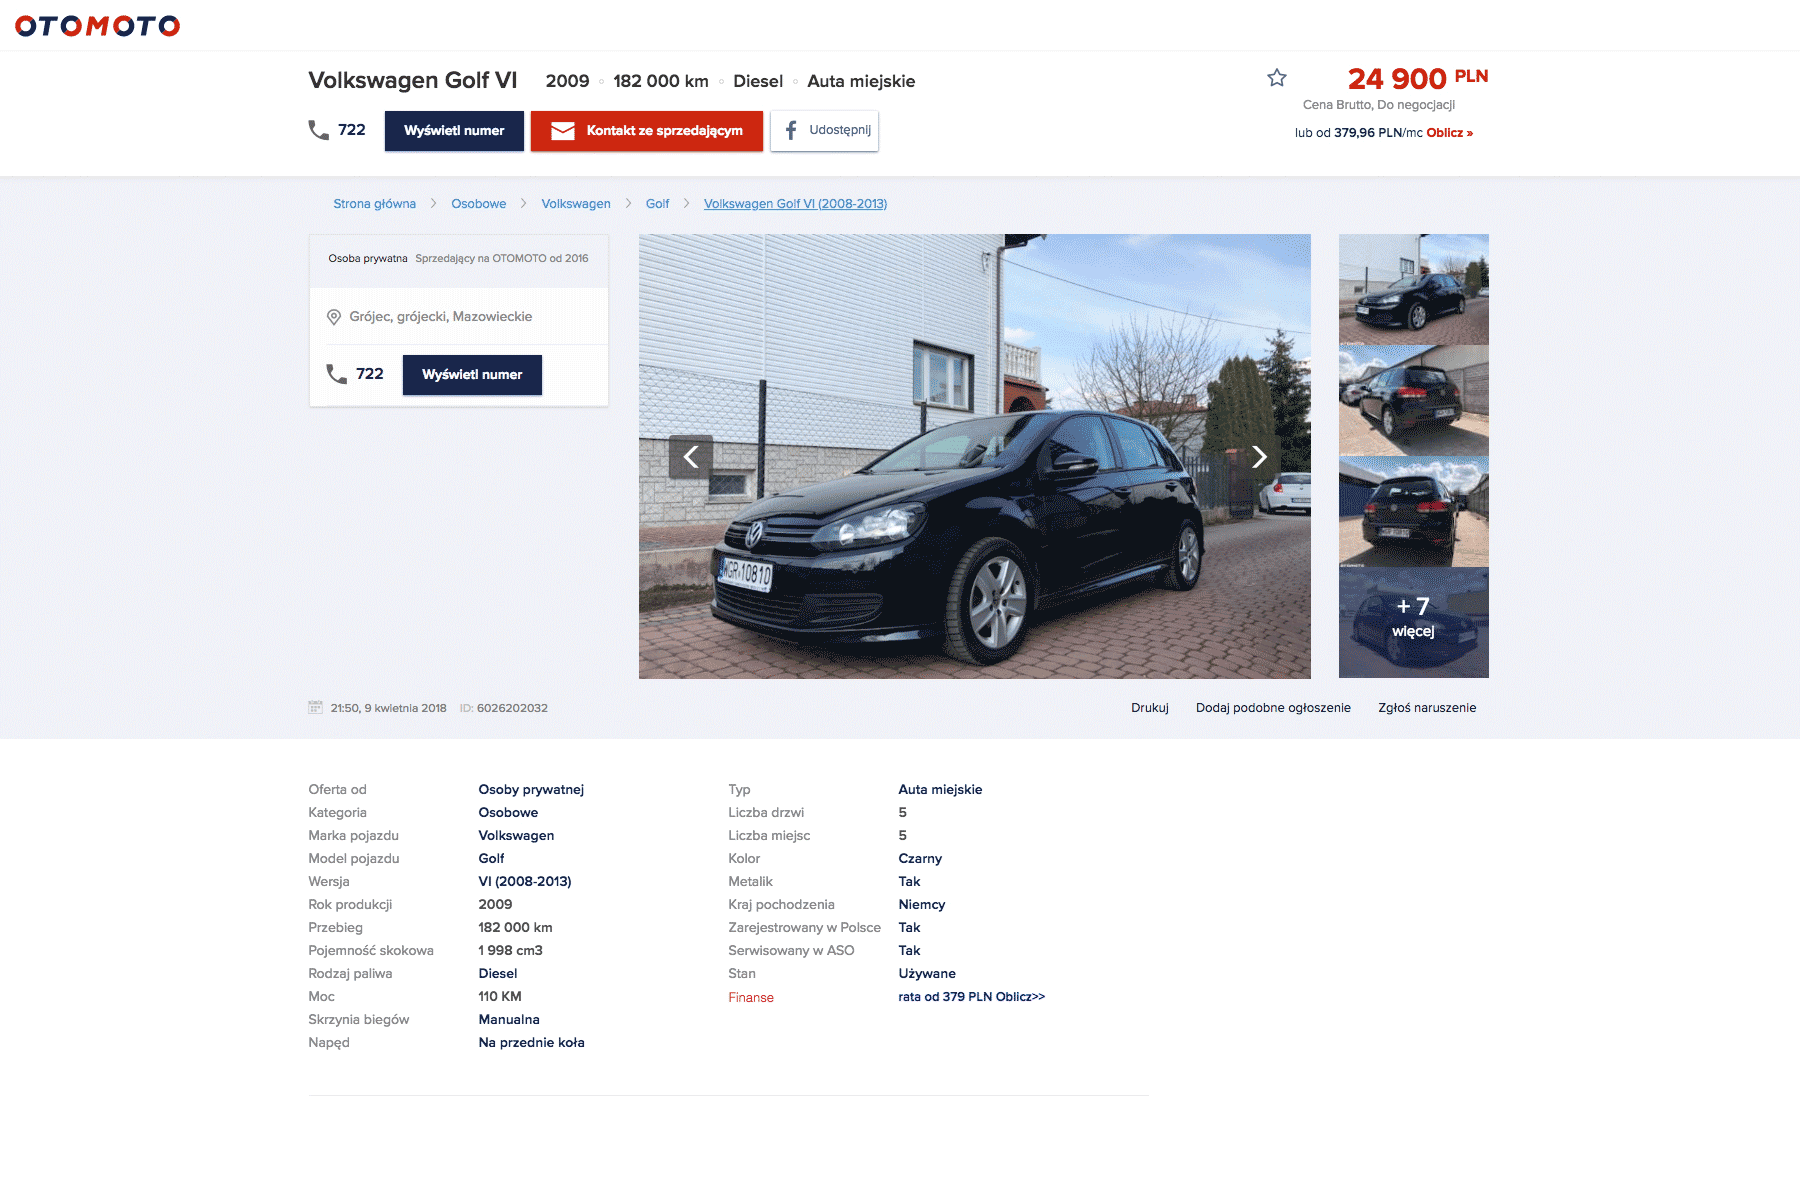 Подержанный Фольксваген Гольф 6 можно купить за 24 900 злотых (416 000 <span class=ruble>Р</span>) на сайте Otomoto.pl